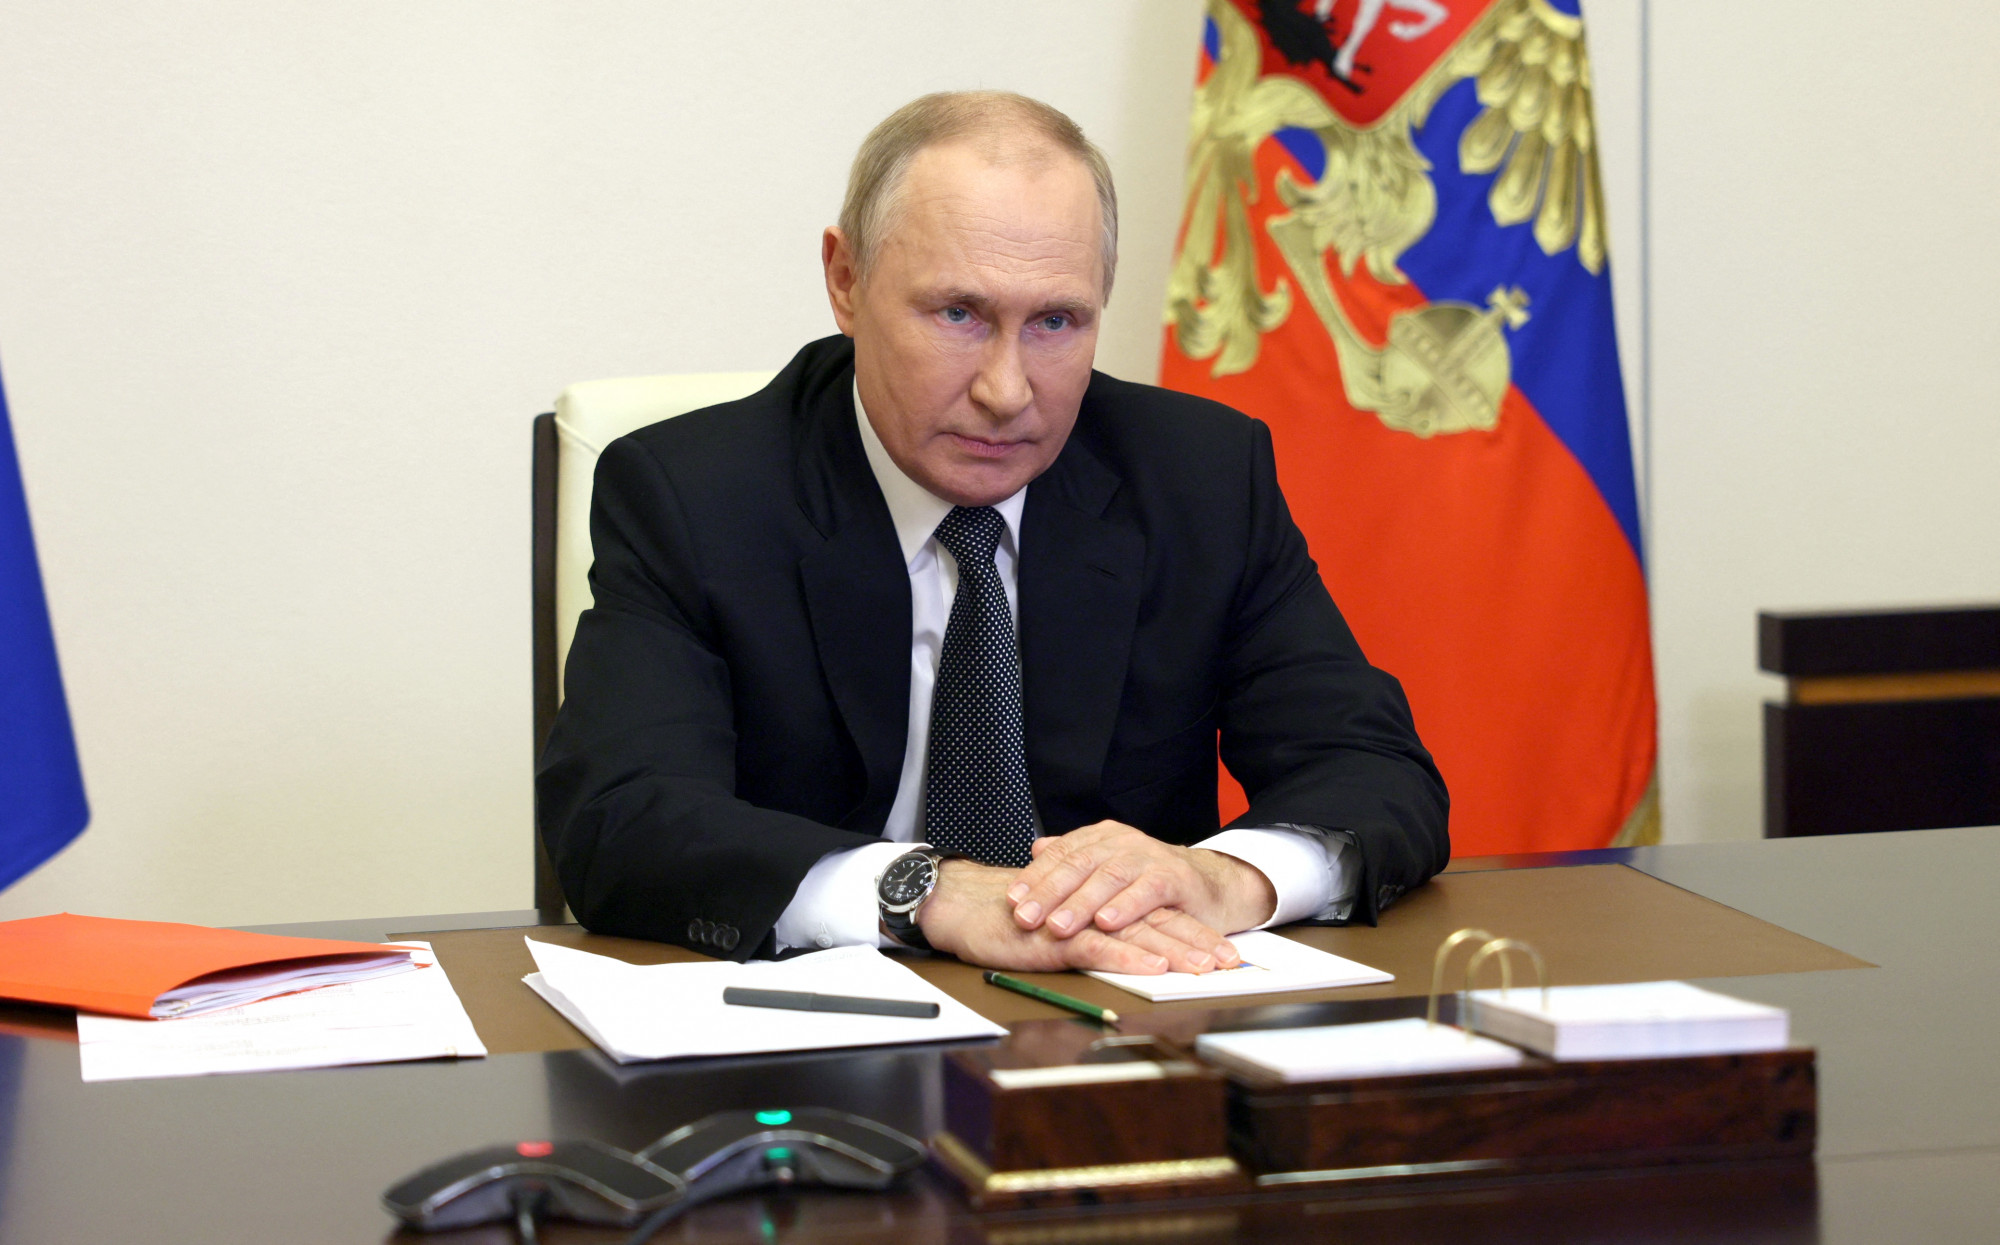 Putyin megint azt mondta, hogy Oroszország „kész tárgyalni Ukrajnáról”